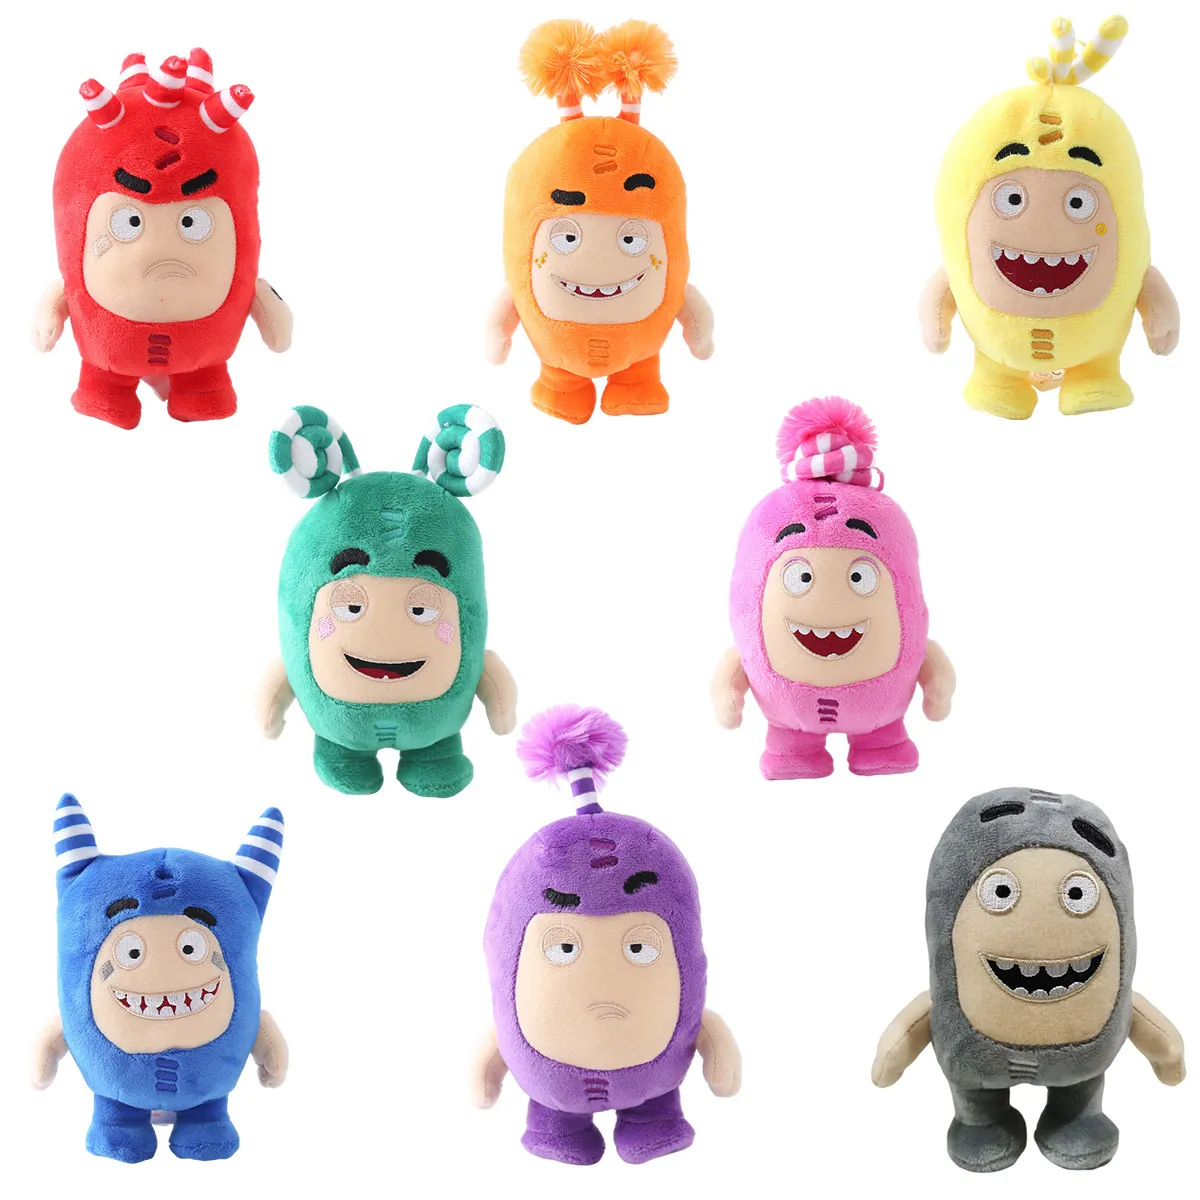 بالجملة من لعبة Qibao اللطيفة البالغة من نوع Qibao اللطيف Odbbods Plush Doll ، تستخدم لألعاب الأطفال وزملاء اللعب وهدايا العطلات والزينة المنزلية